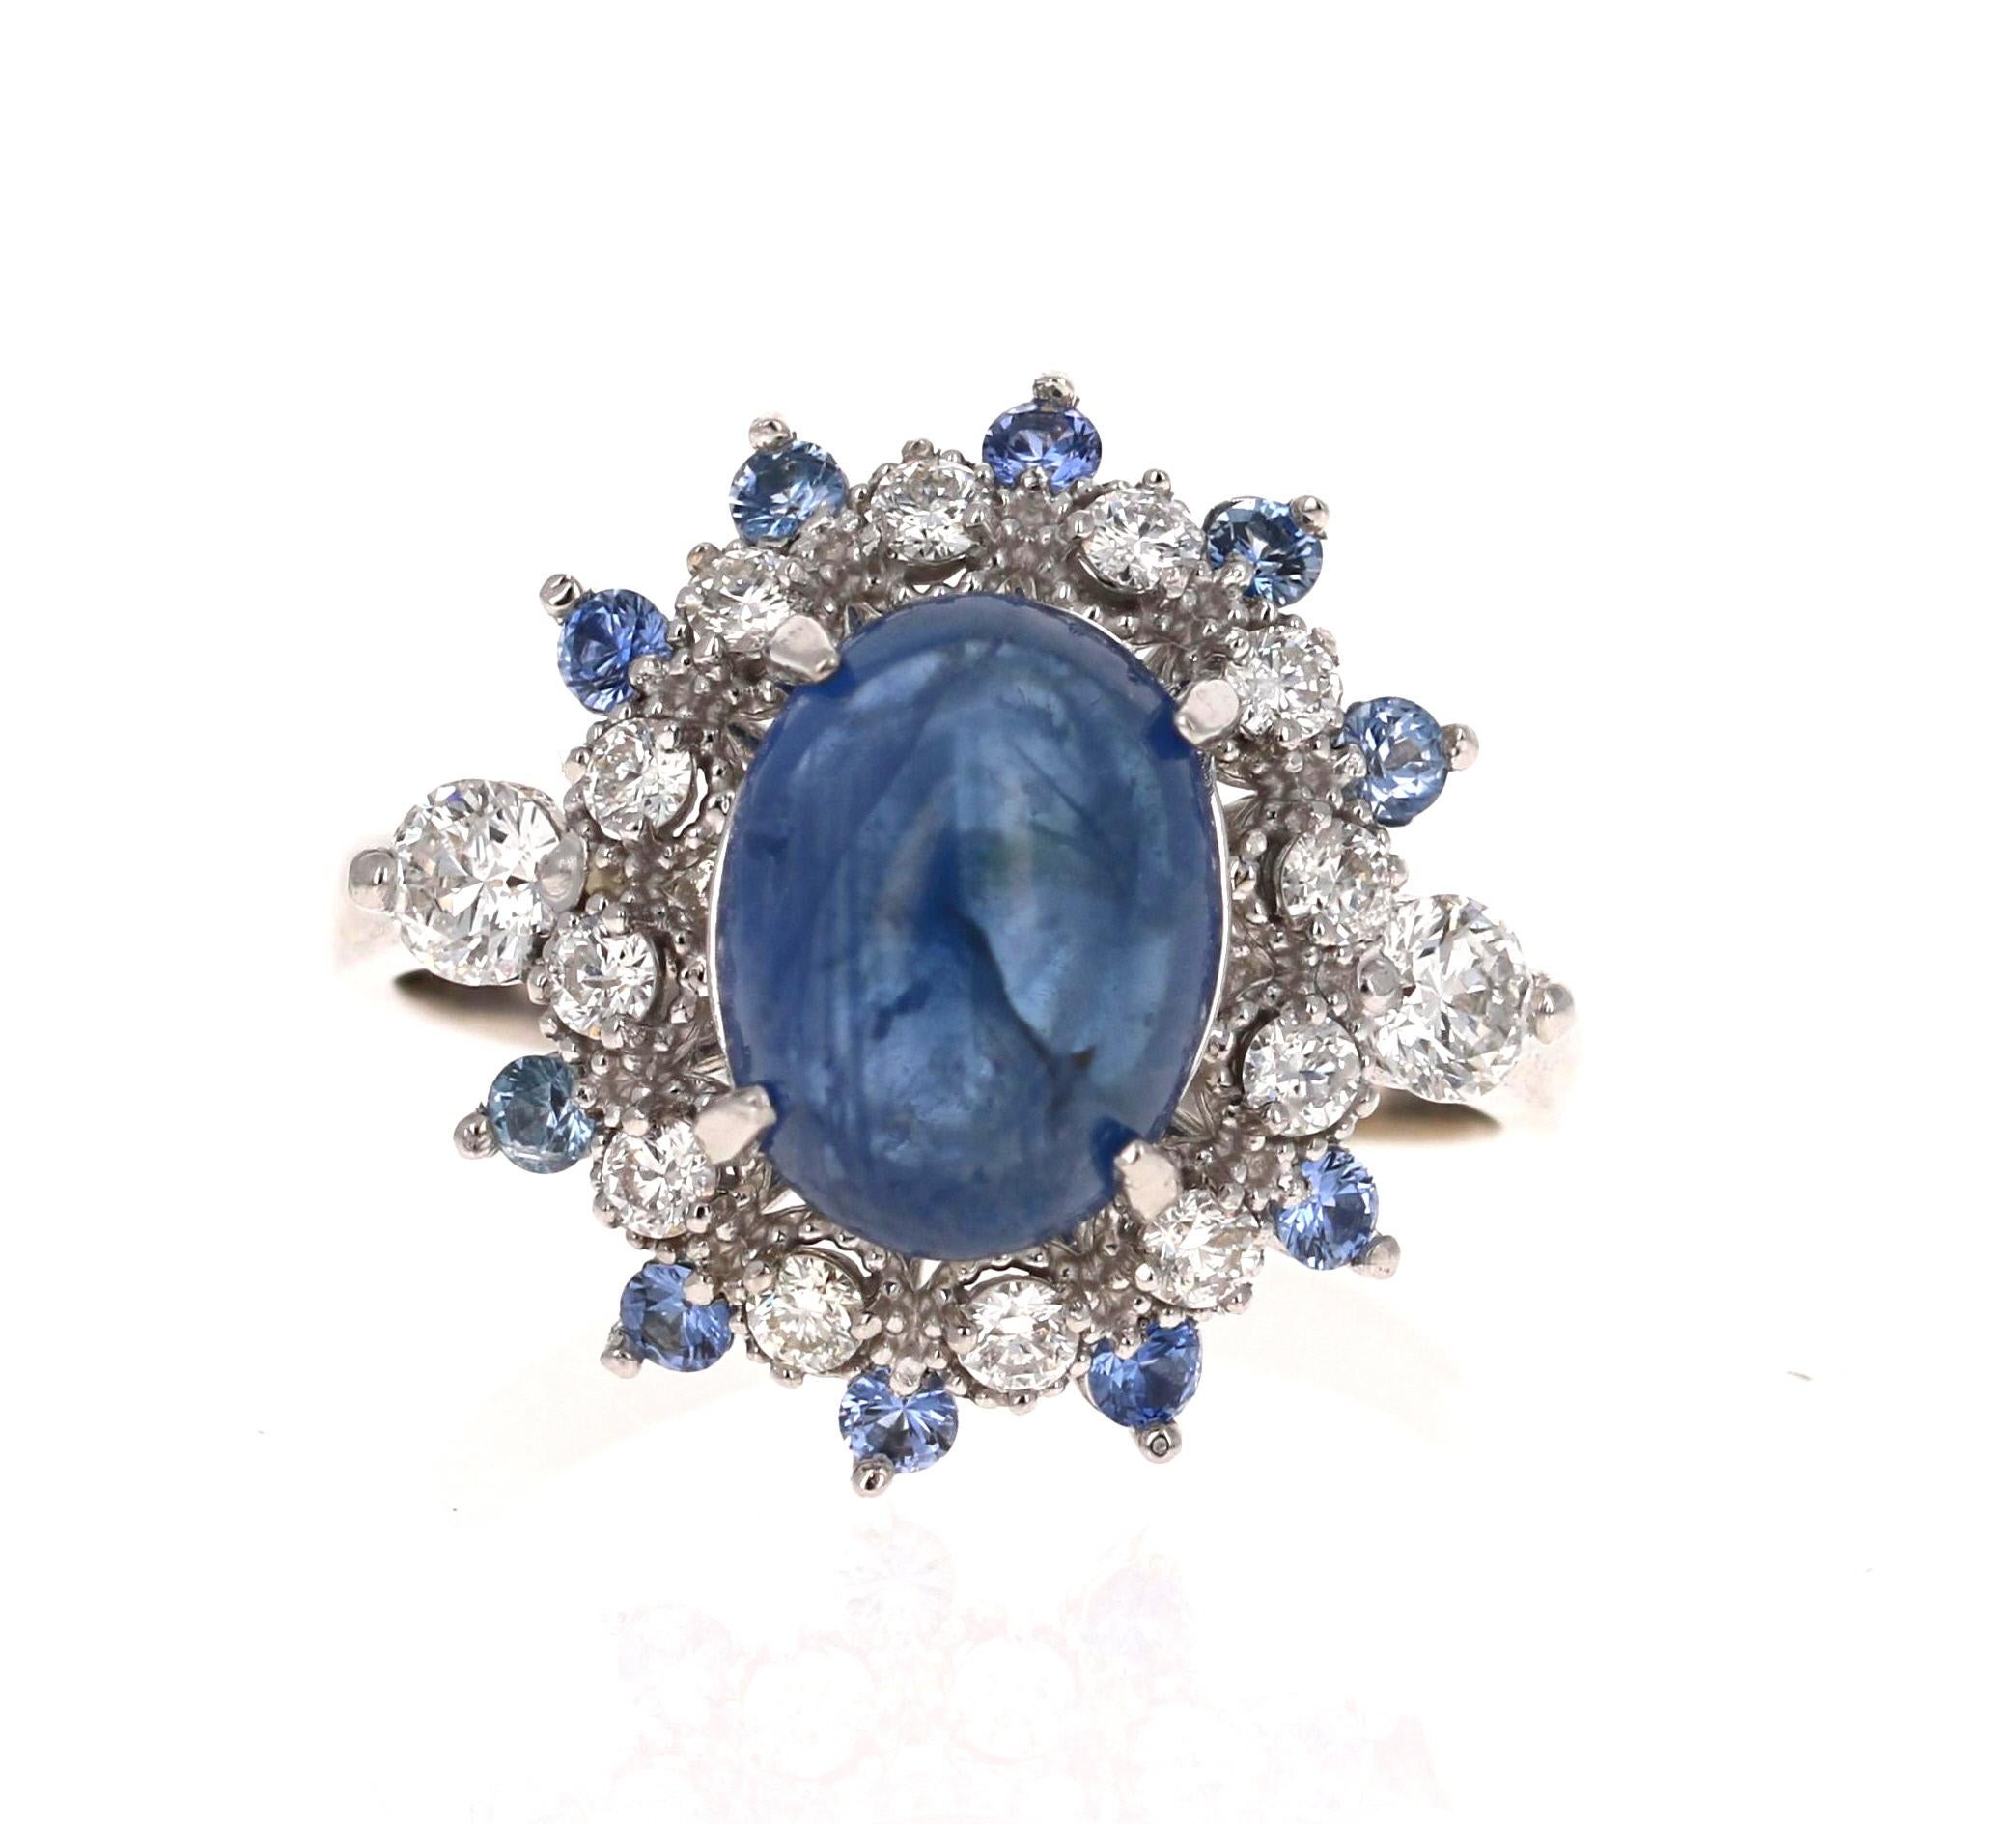  Dieser Ring hat einen Cabochon blauen Saphir, die 4,10 Karat in der Mitte des Rings gesetzt wiegt. Der Saphir ist von 14 Diamanten im Rundschliff mit einem Gewicht von 0,56 Karat (Reinheit: SI2, Farbe: F) umgeben und hat außerdem 12 blaue Saphire